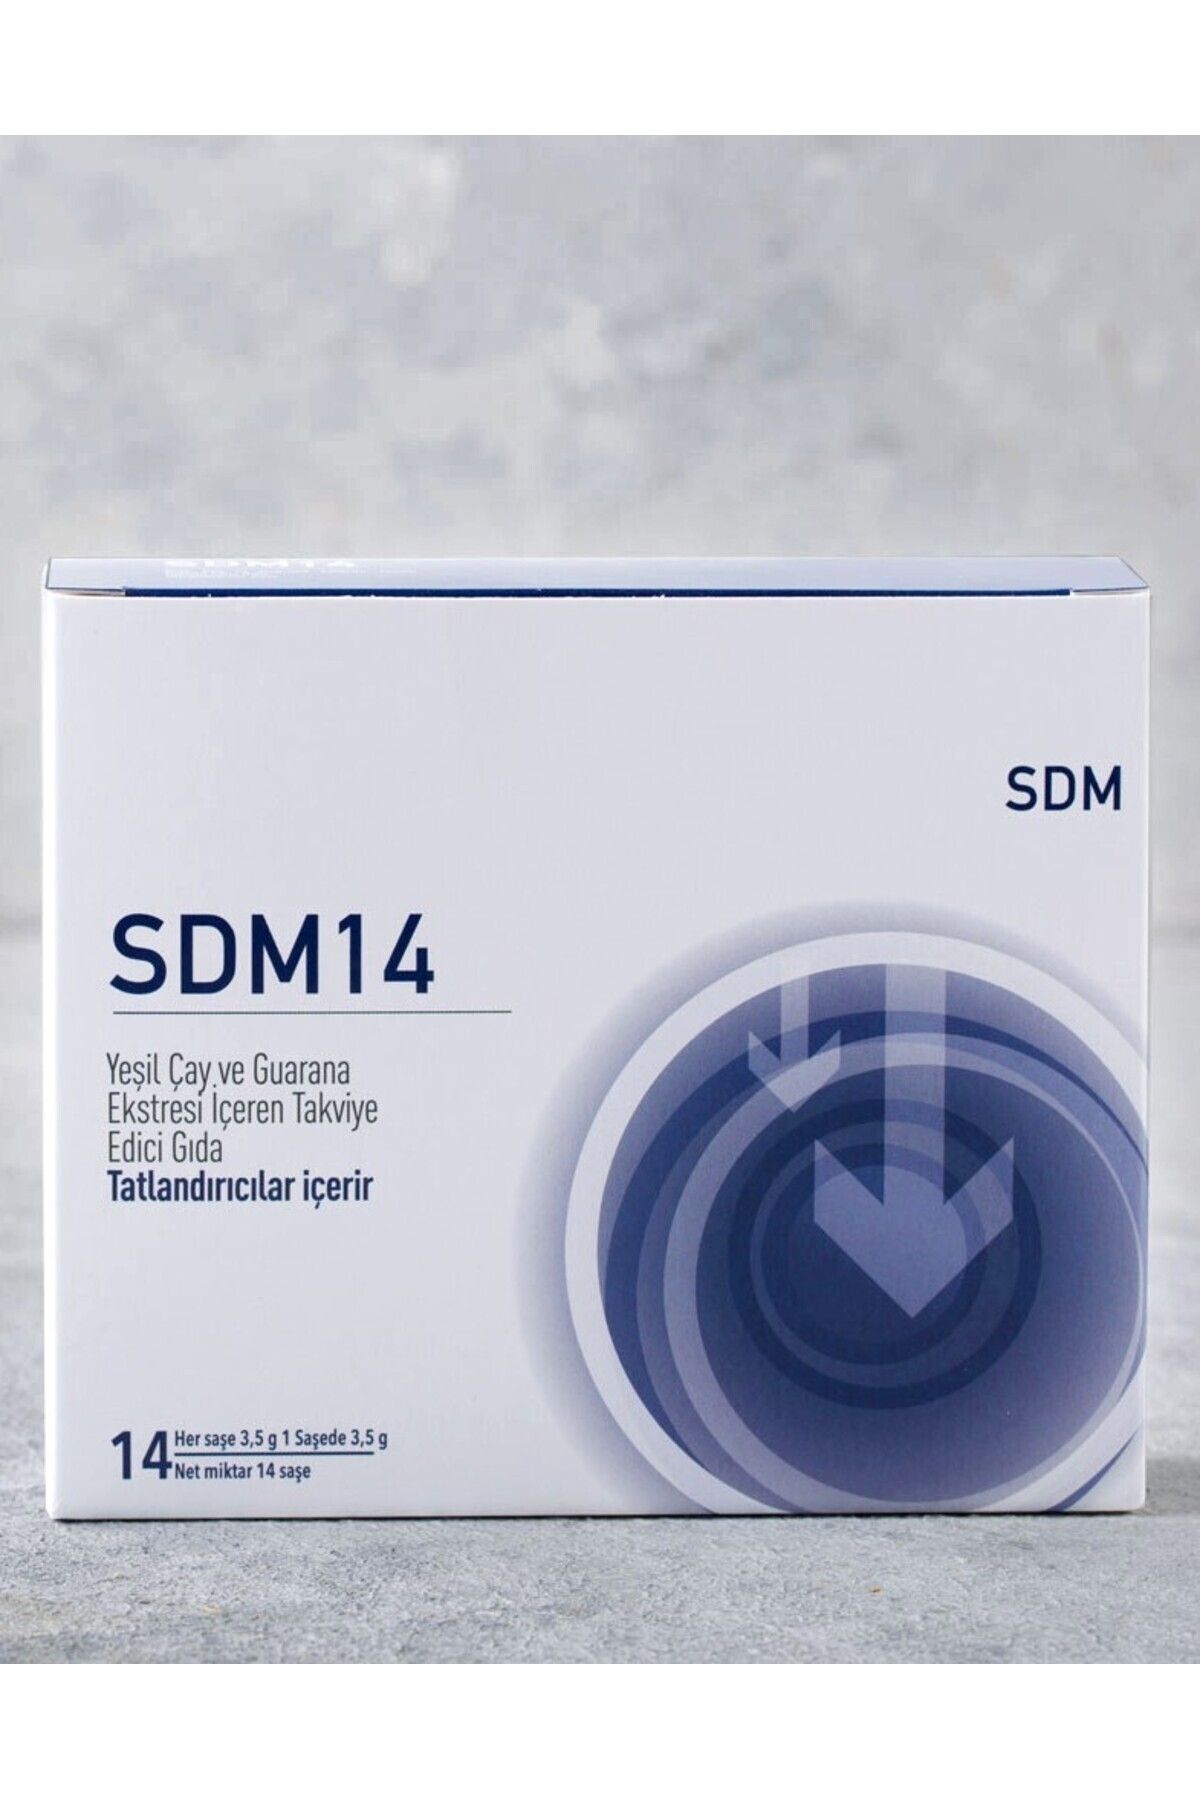 SDM GIDA Sdm 14 - Ödem Atımını Destekleyen Gıda Takviyesi